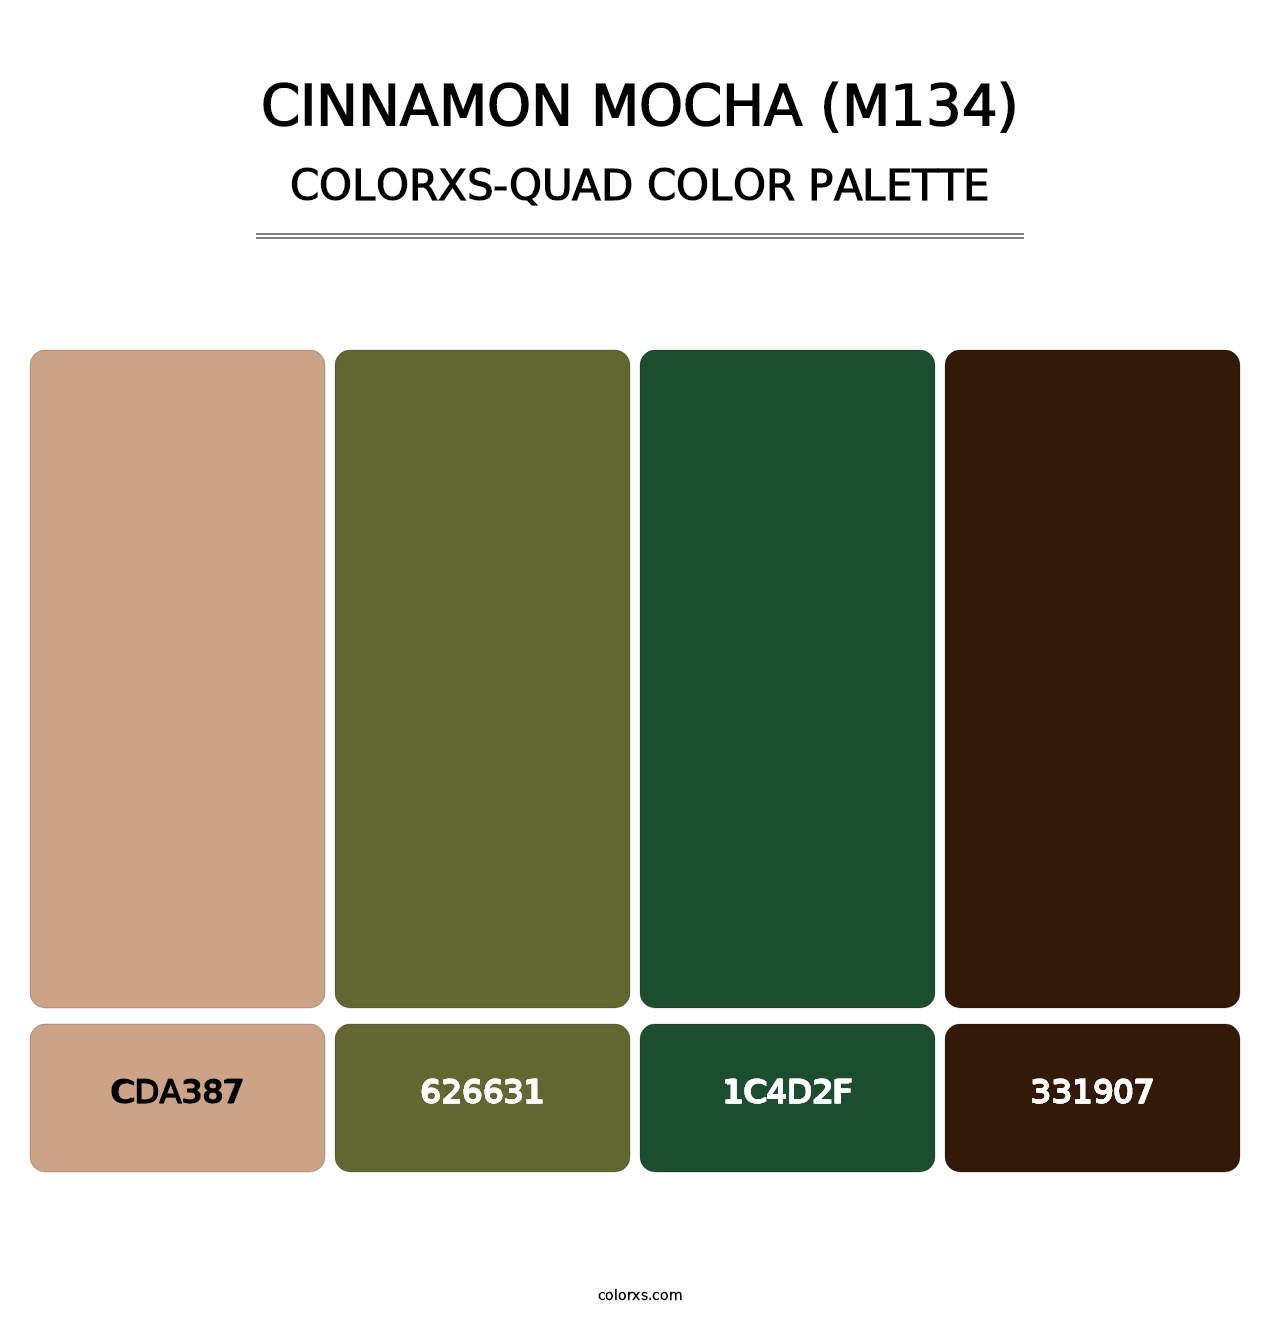 Cinnamon Mocha (M134) - Colorxs Quad Palette